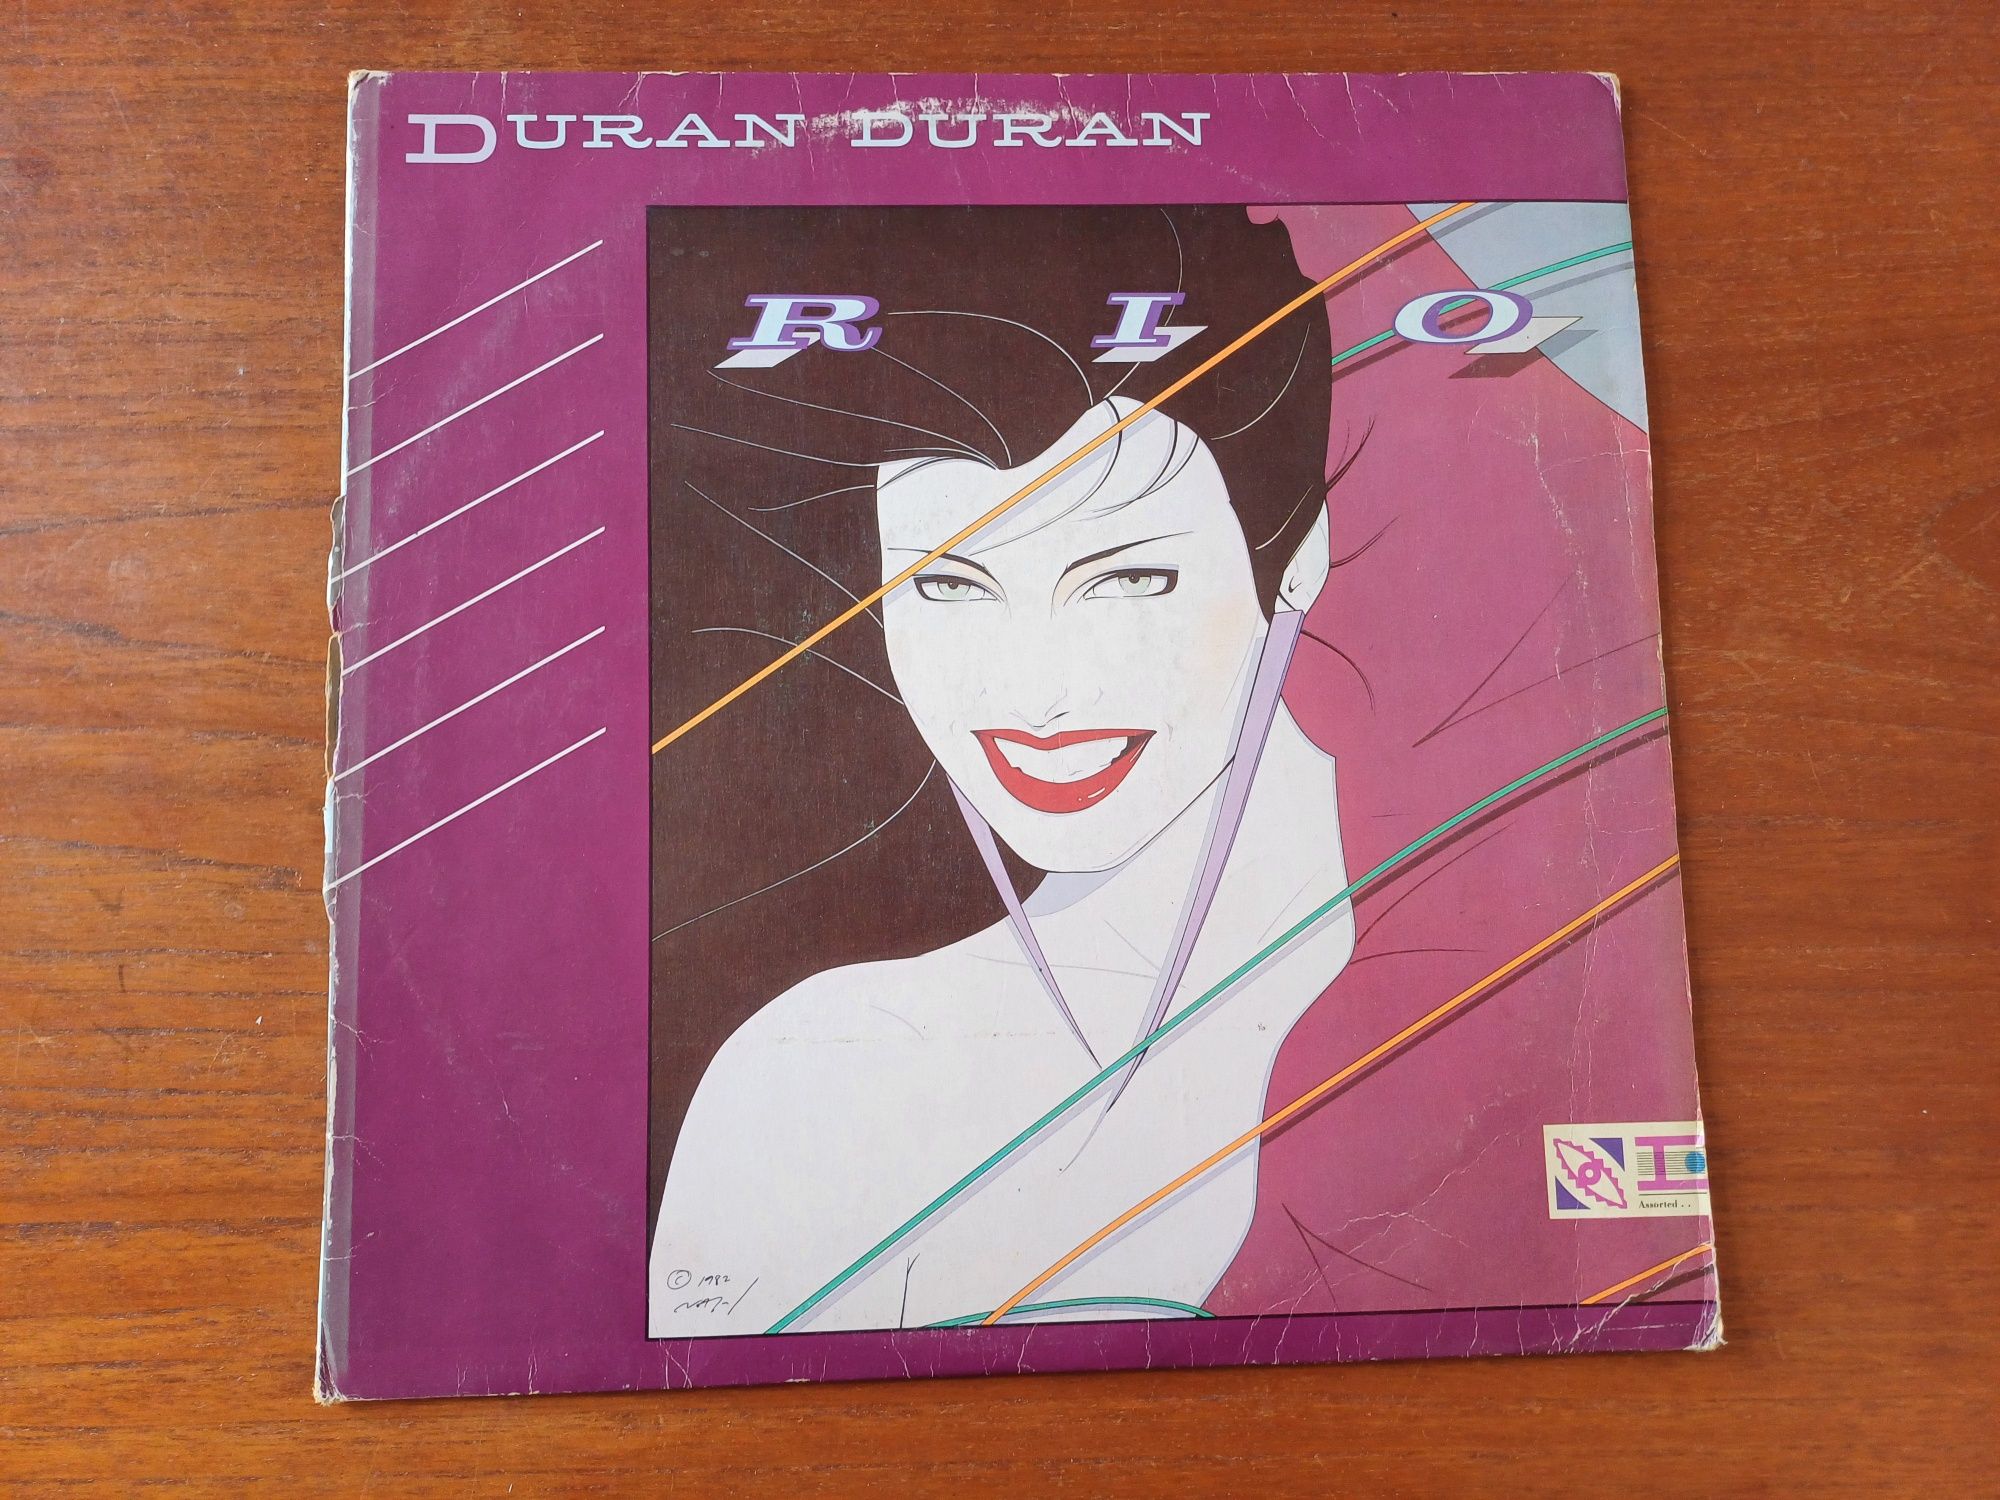 Duran Duran - Rio, em vinil